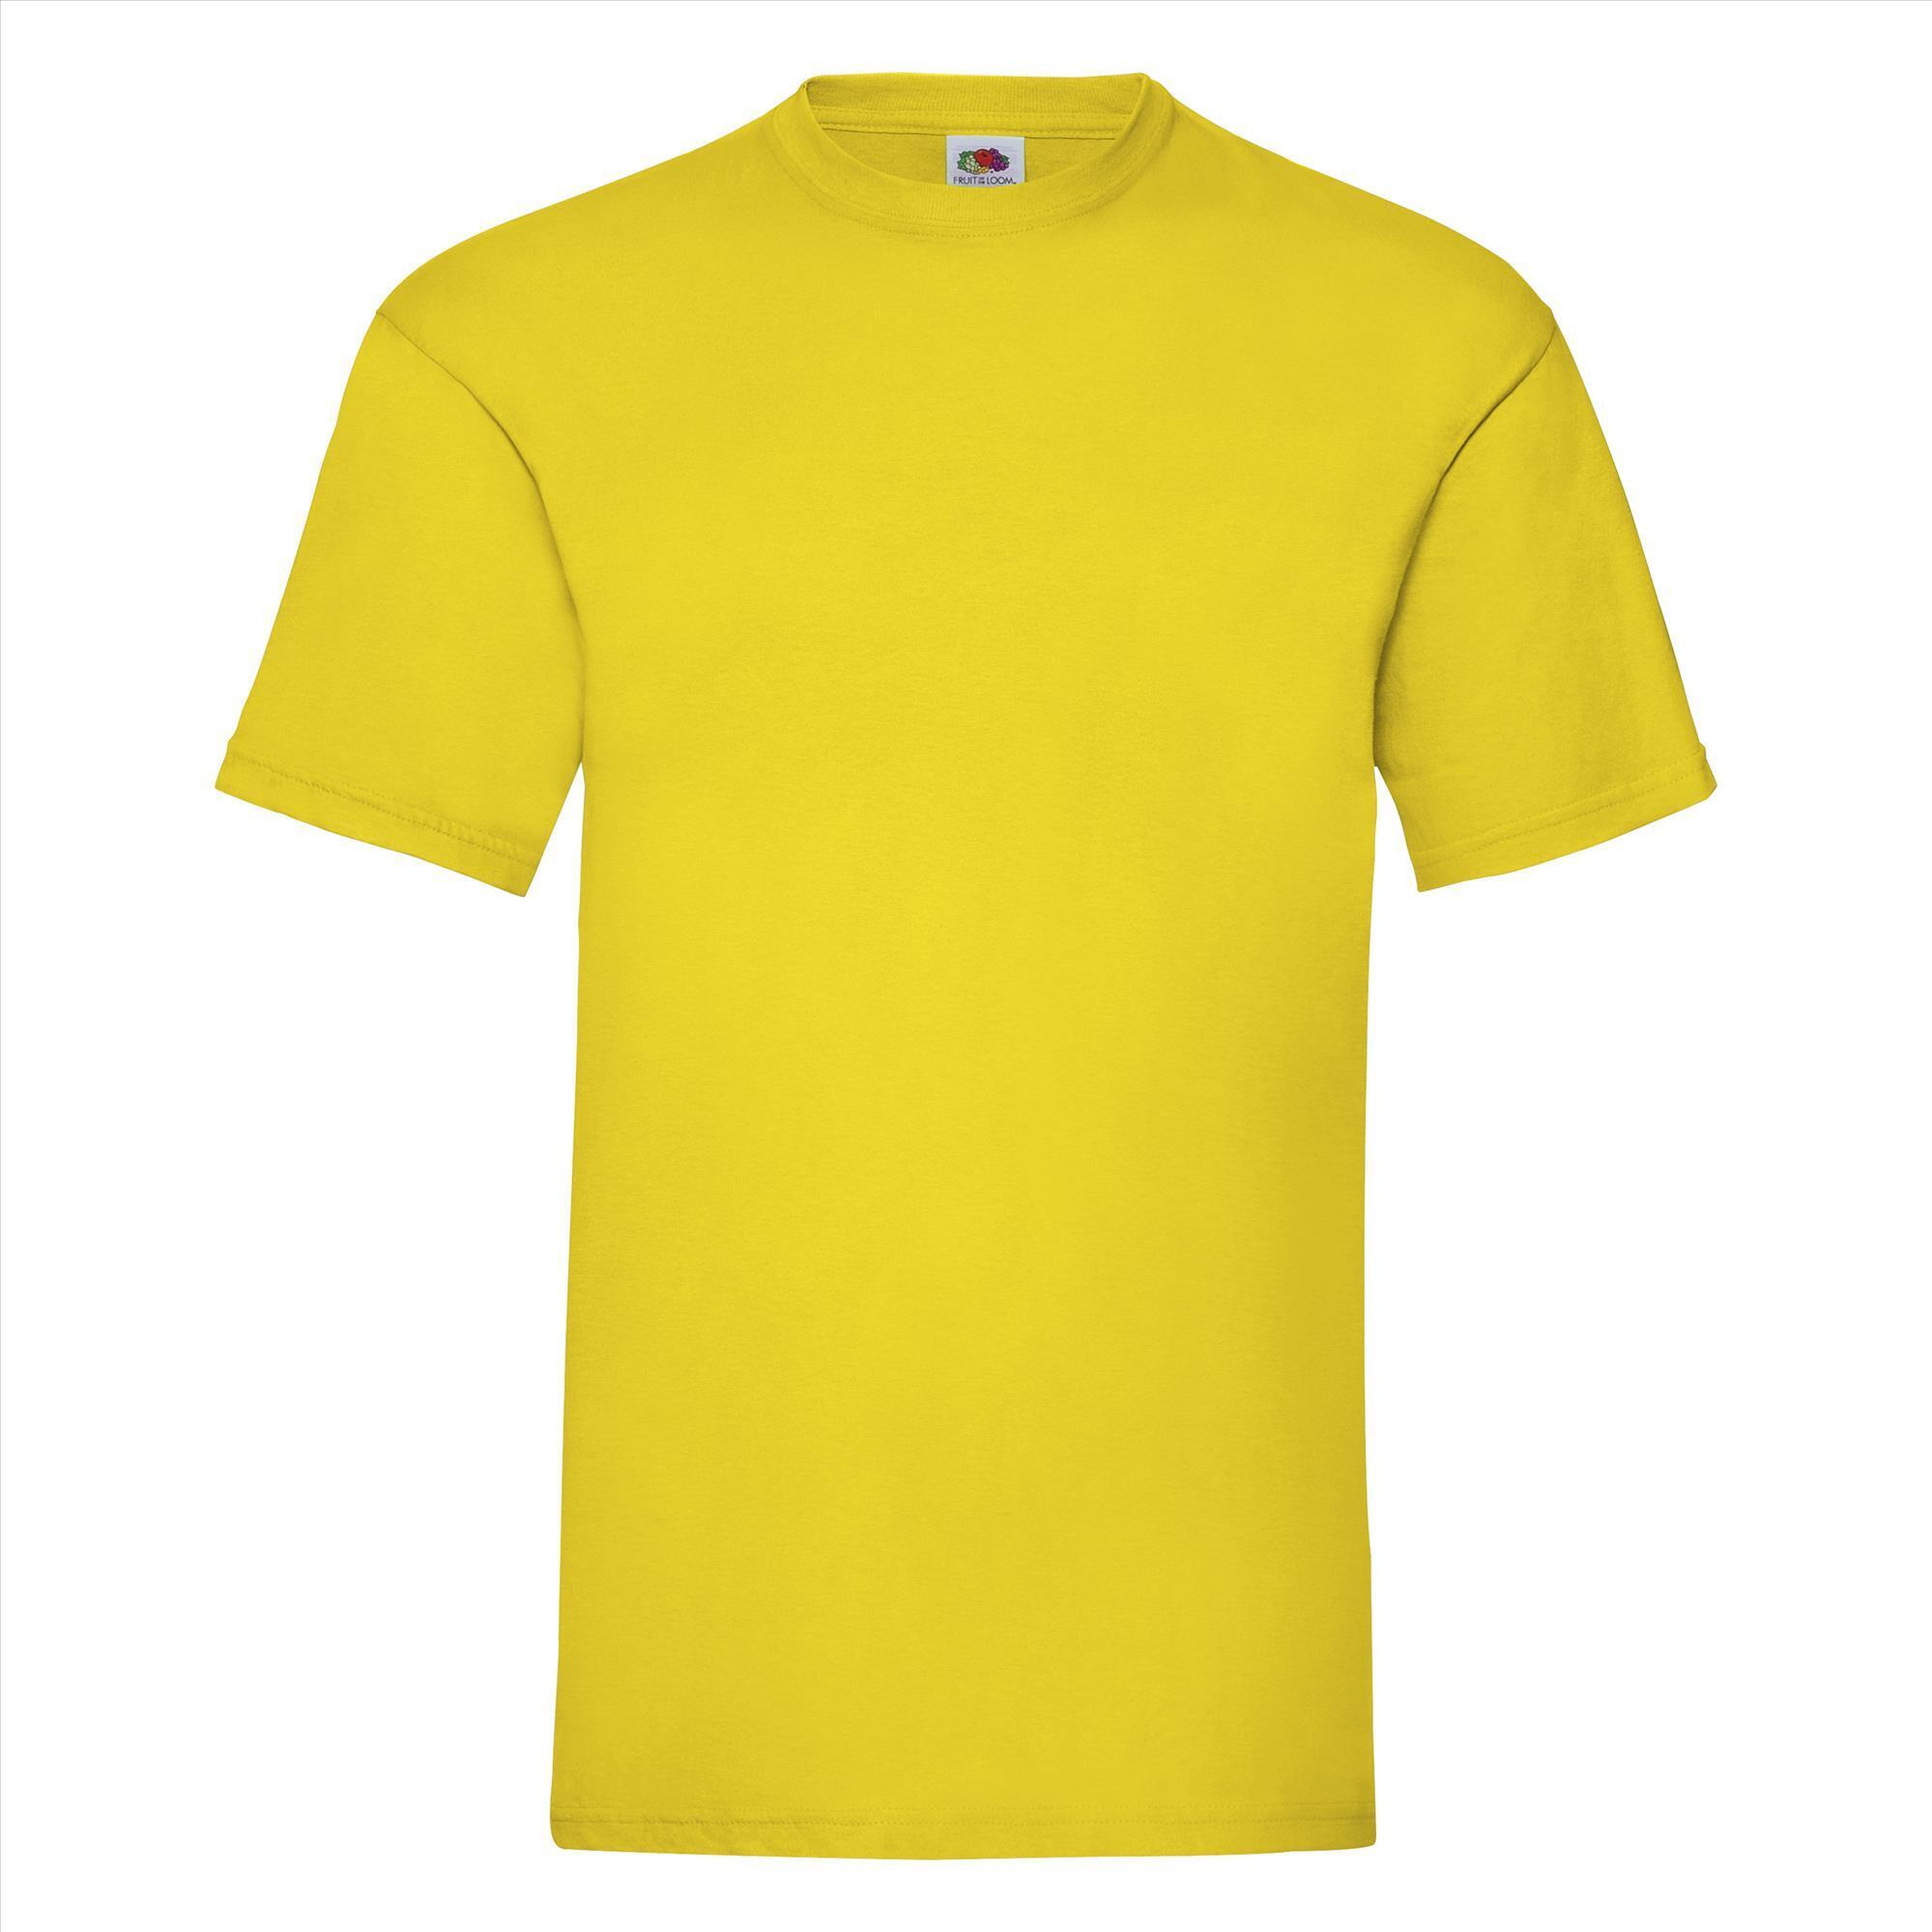 T-shirt voor mannen geel personaliseren T-shirt bedrukken